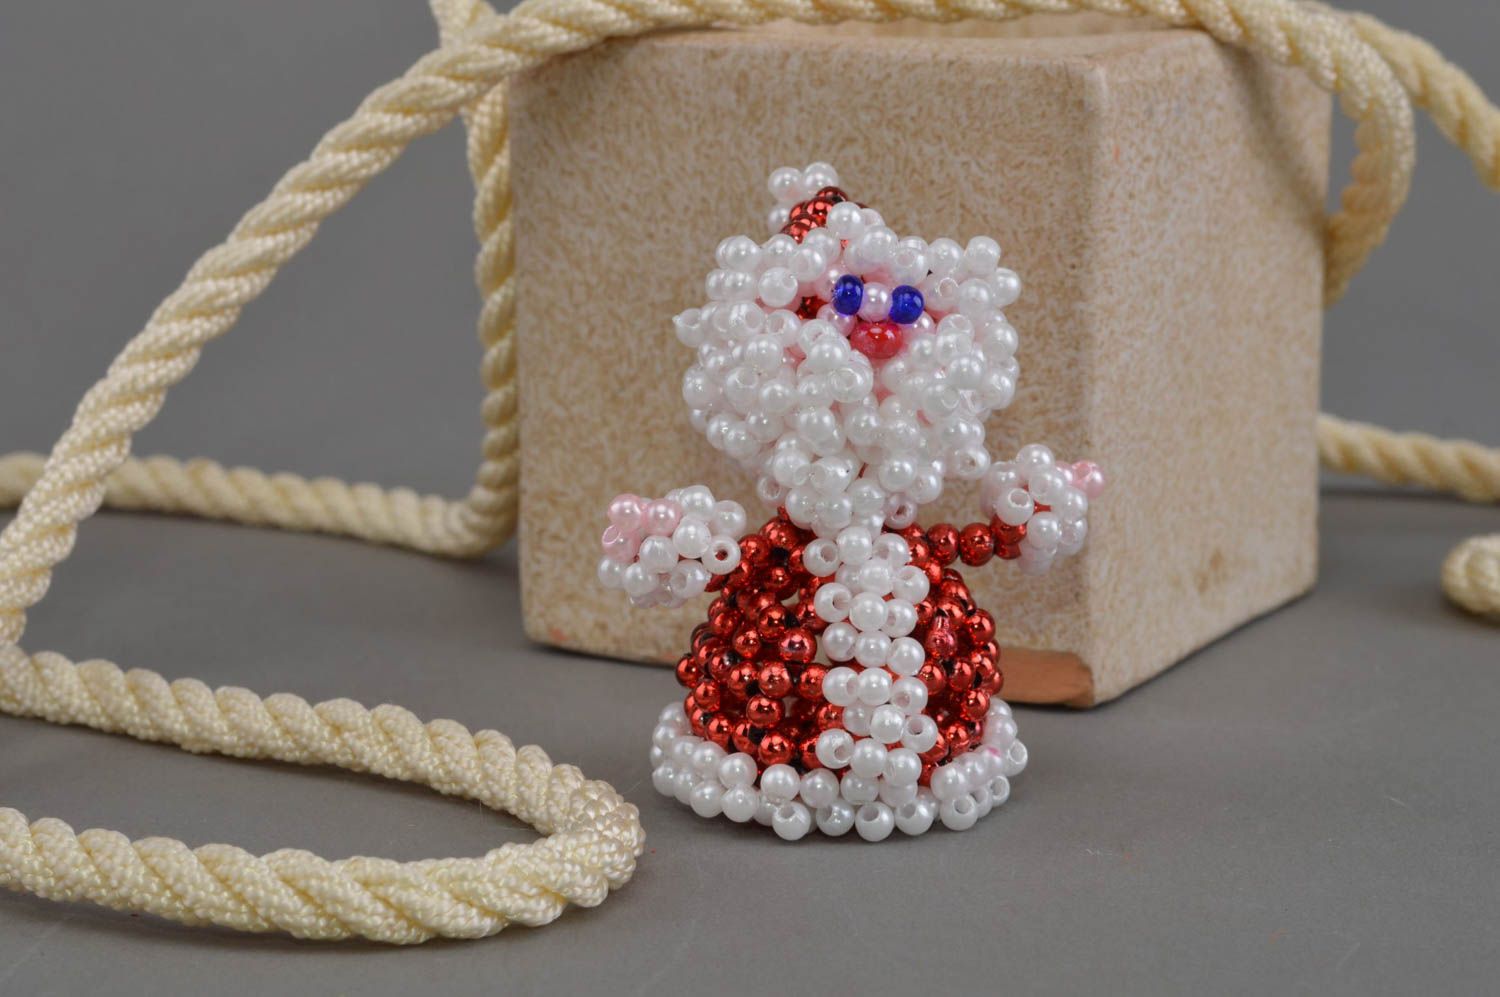 Бисерная фигурка Деда Мороза ручной работы маленькая для новогоднего декора дома фото 1